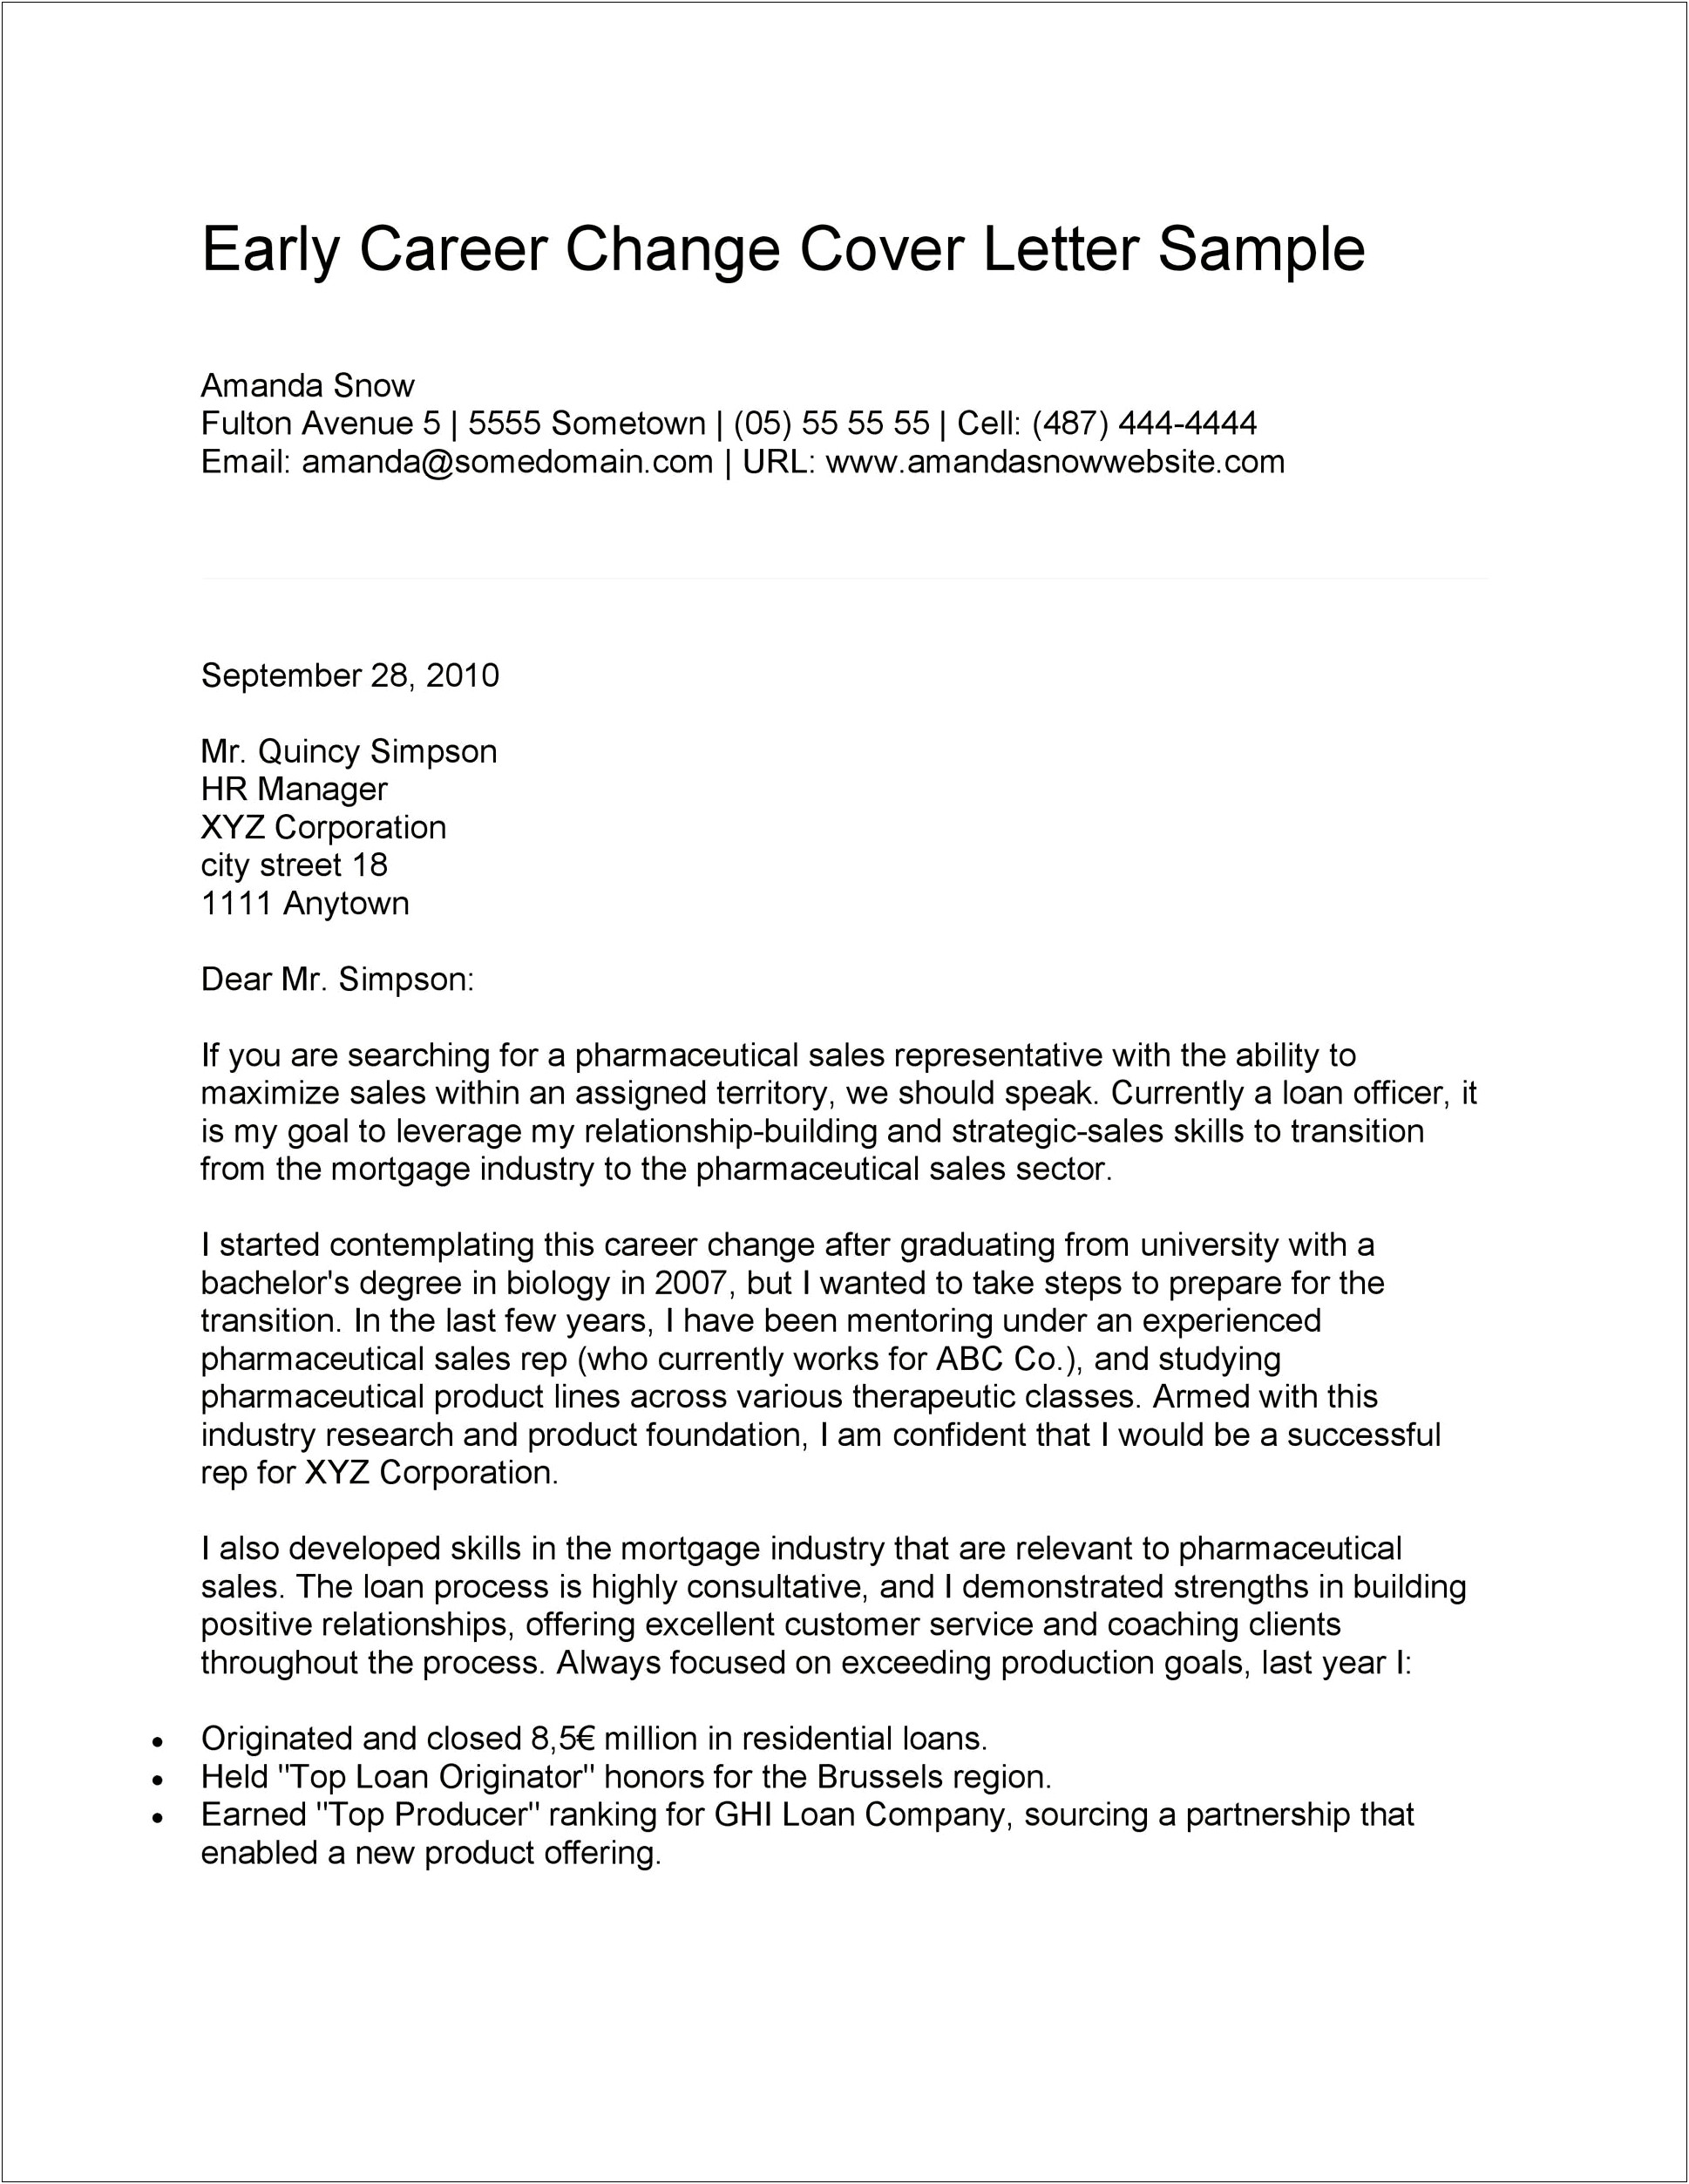 Resume Cover Letter For New Career